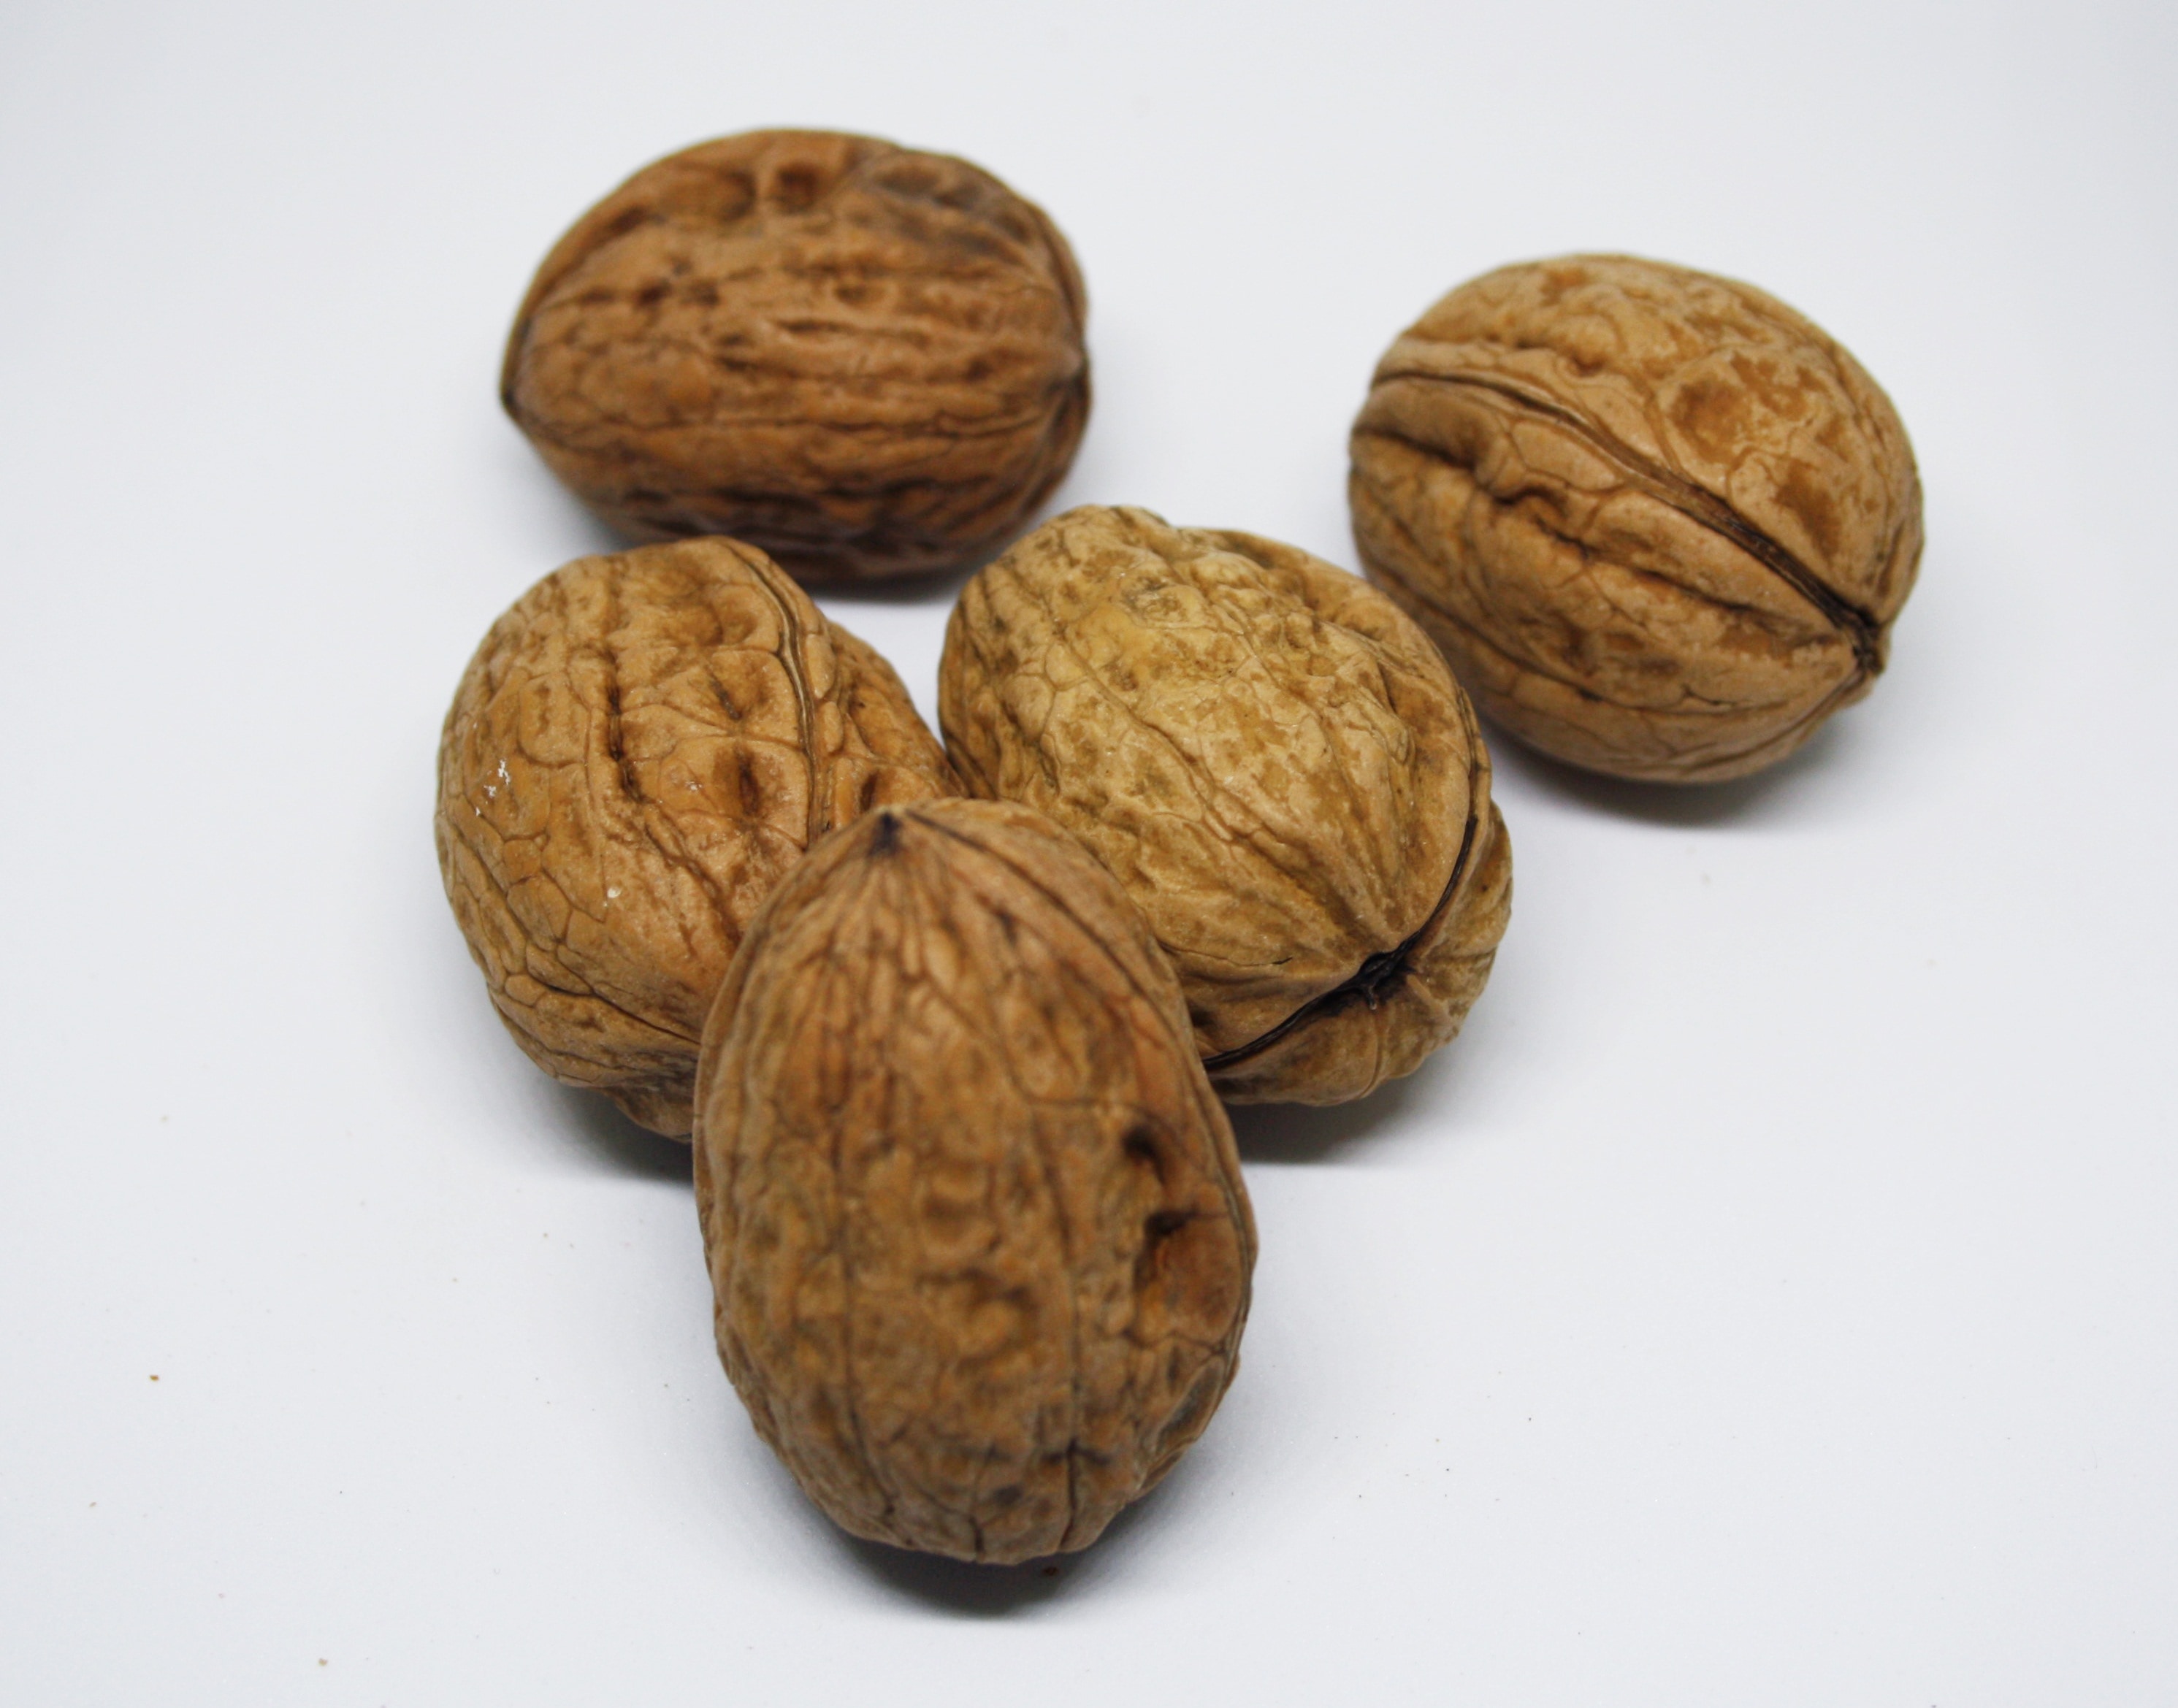 brown walnuts